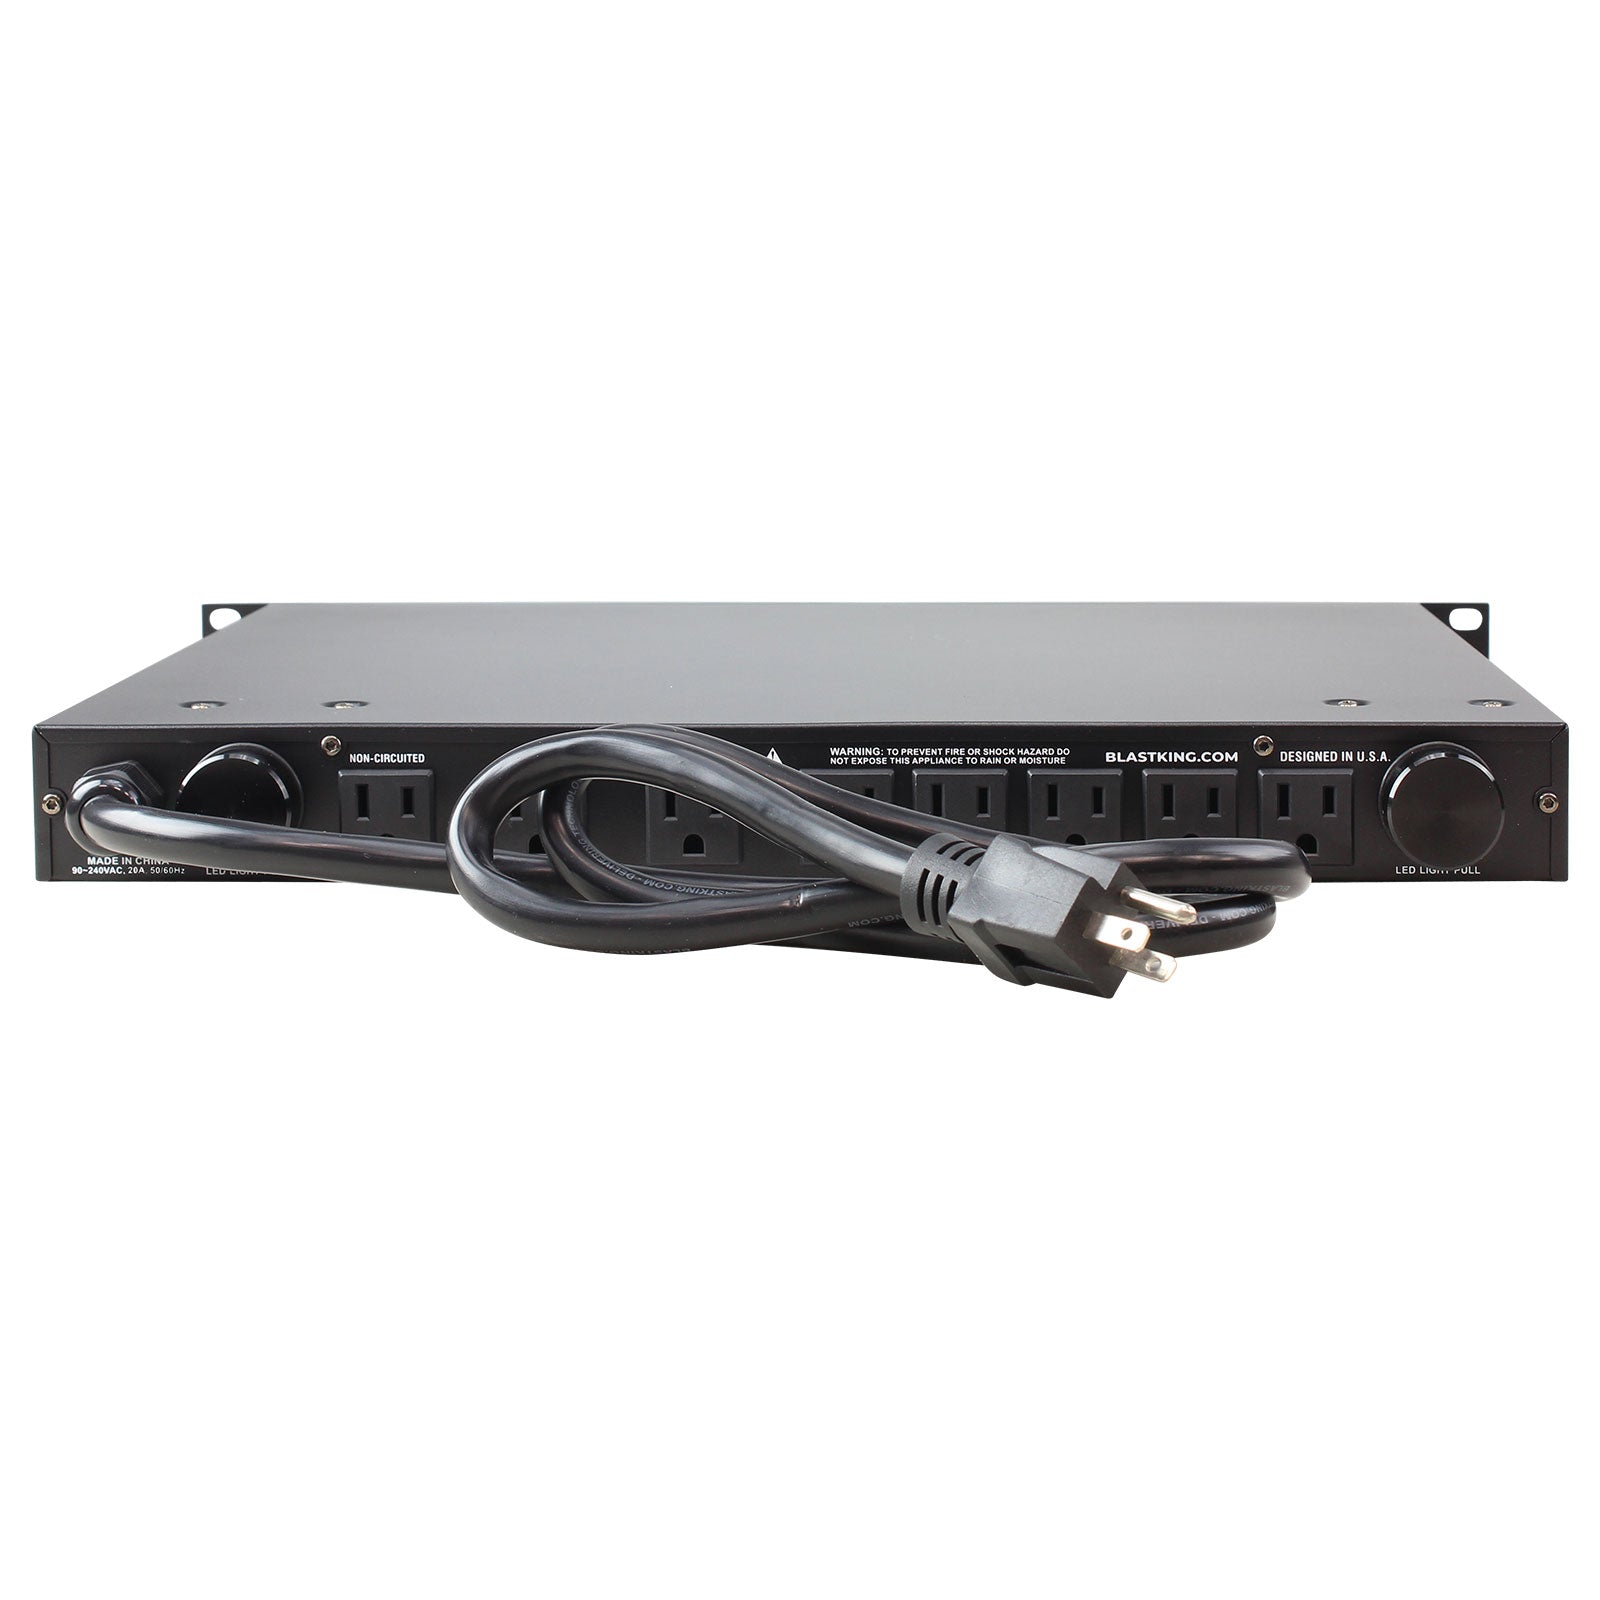 Blastking PC904-AV2 20 Amp Power Conditioner